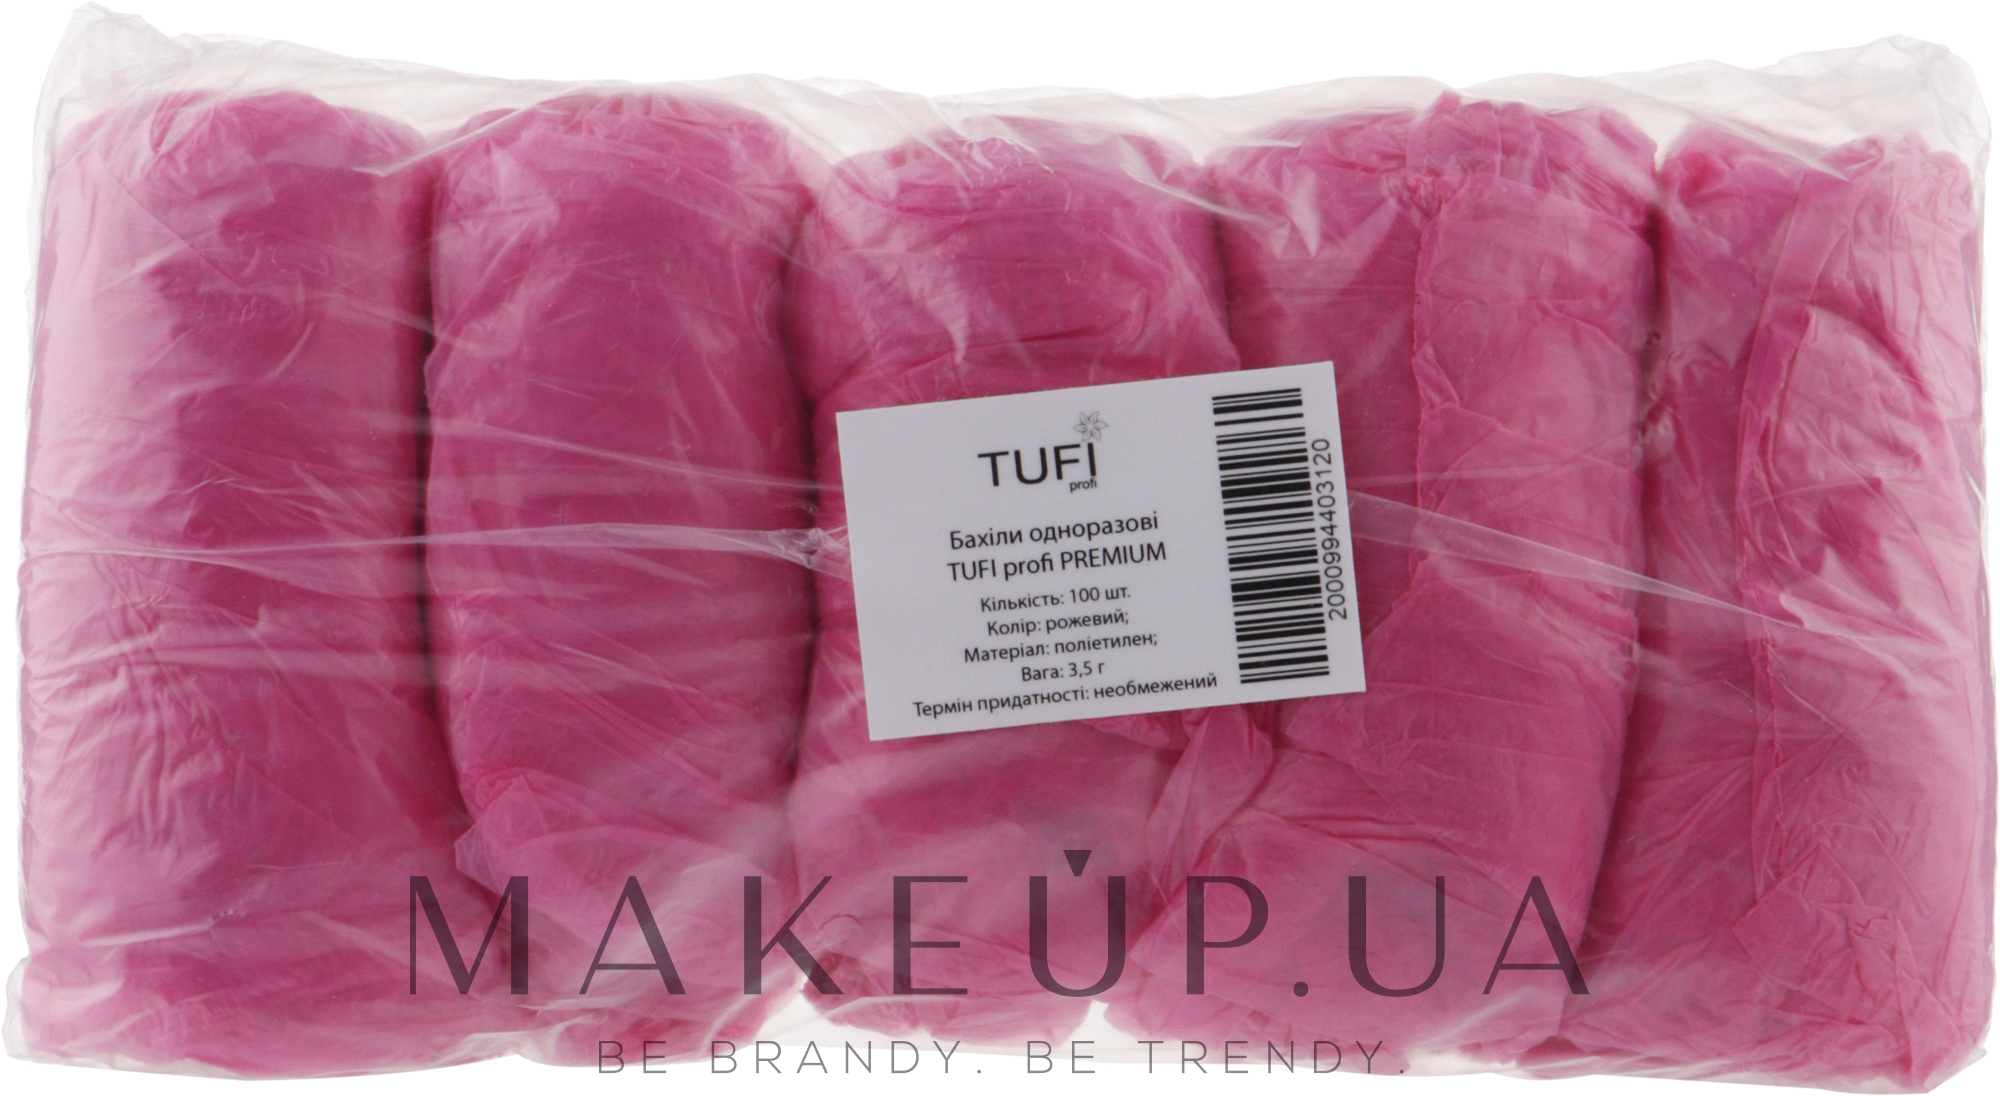 Бахіли одноразові, 3.5 г рожевий, 100 шт. - Tuffi Proffi Premium — фото 100шт